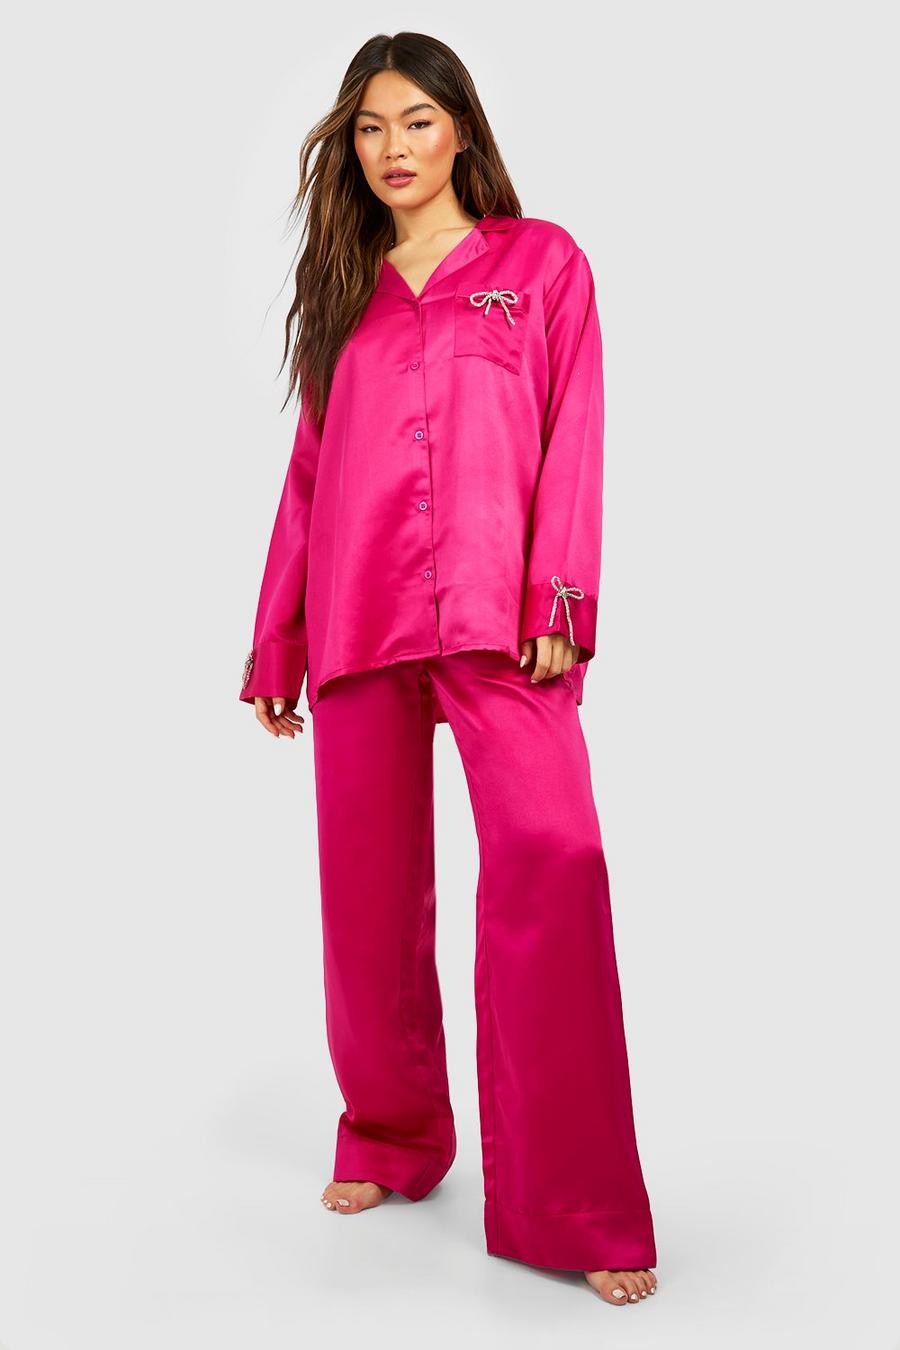 Premium Pyjama mit Strass-Schleife und weitem Bein, Hot pink